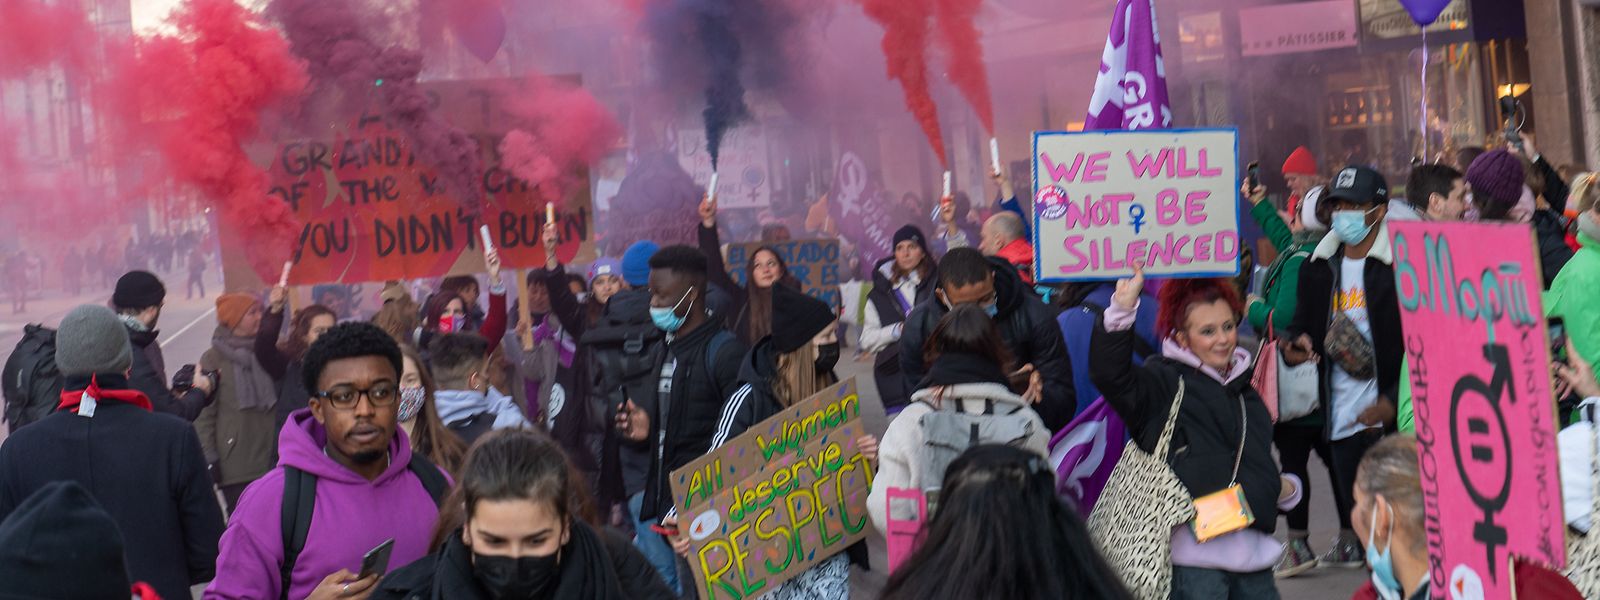 Am 8. März ruft die Plattform JIF (Journée Internationale des Femmes) anlässlich des Weltfrauentags am 8. März zur Beteiligung an der Protestaktion „Fraestreik“ auf.